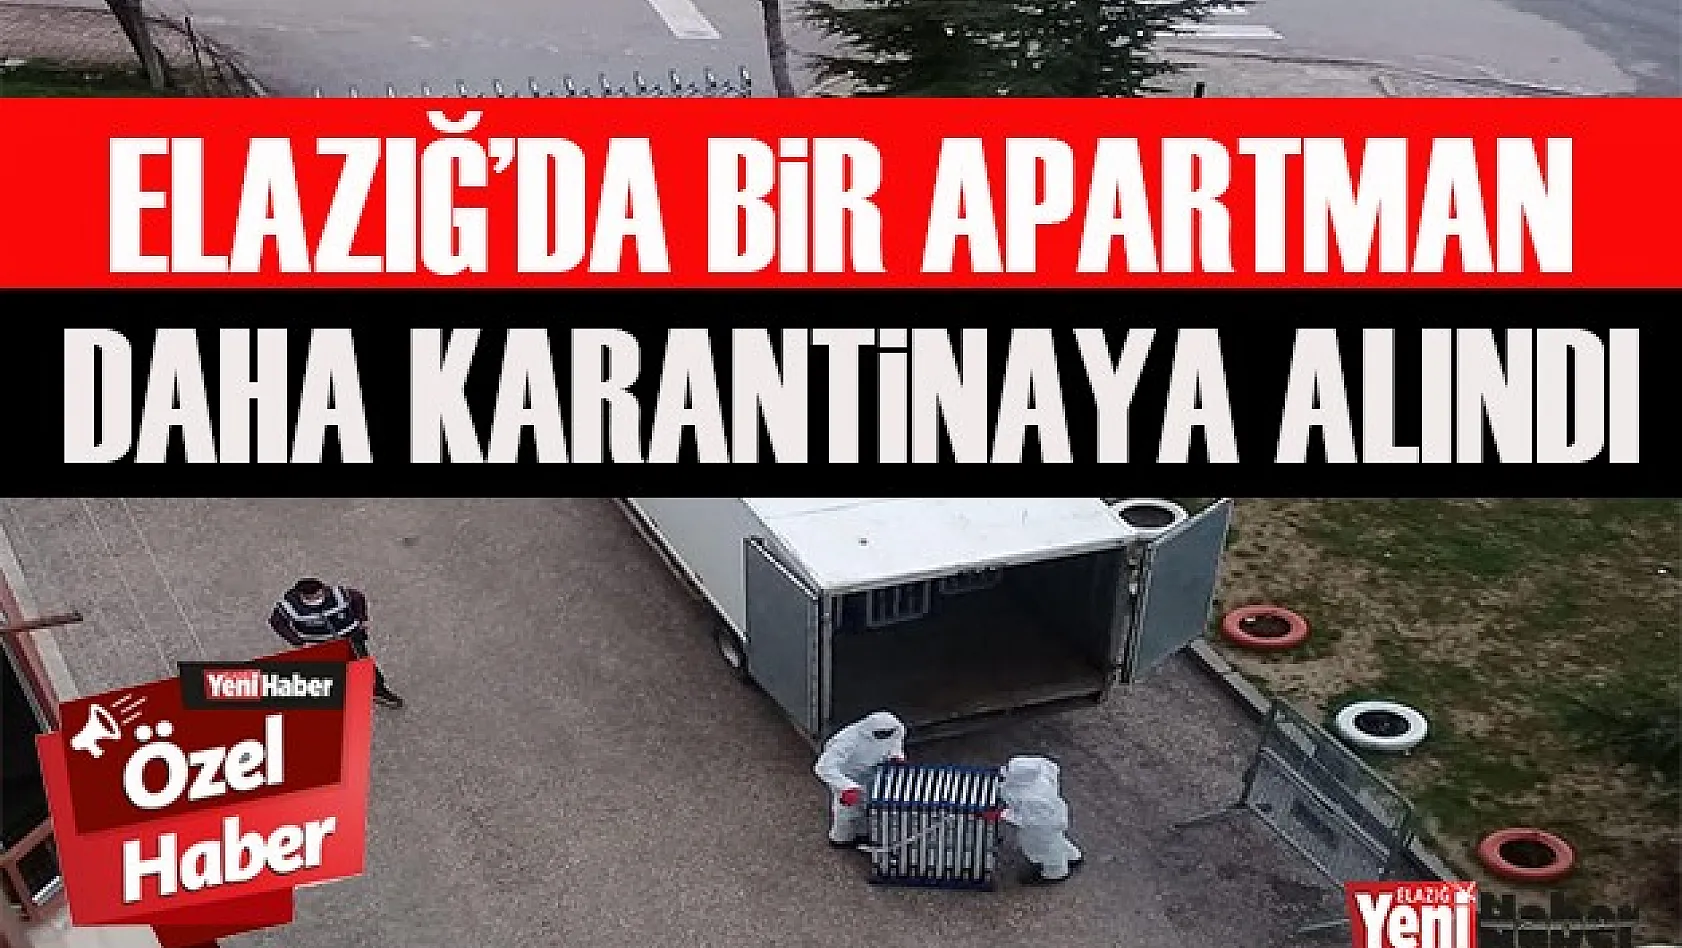 Elazığ'da Bir Apartman Daha Karantinaya Alındı!